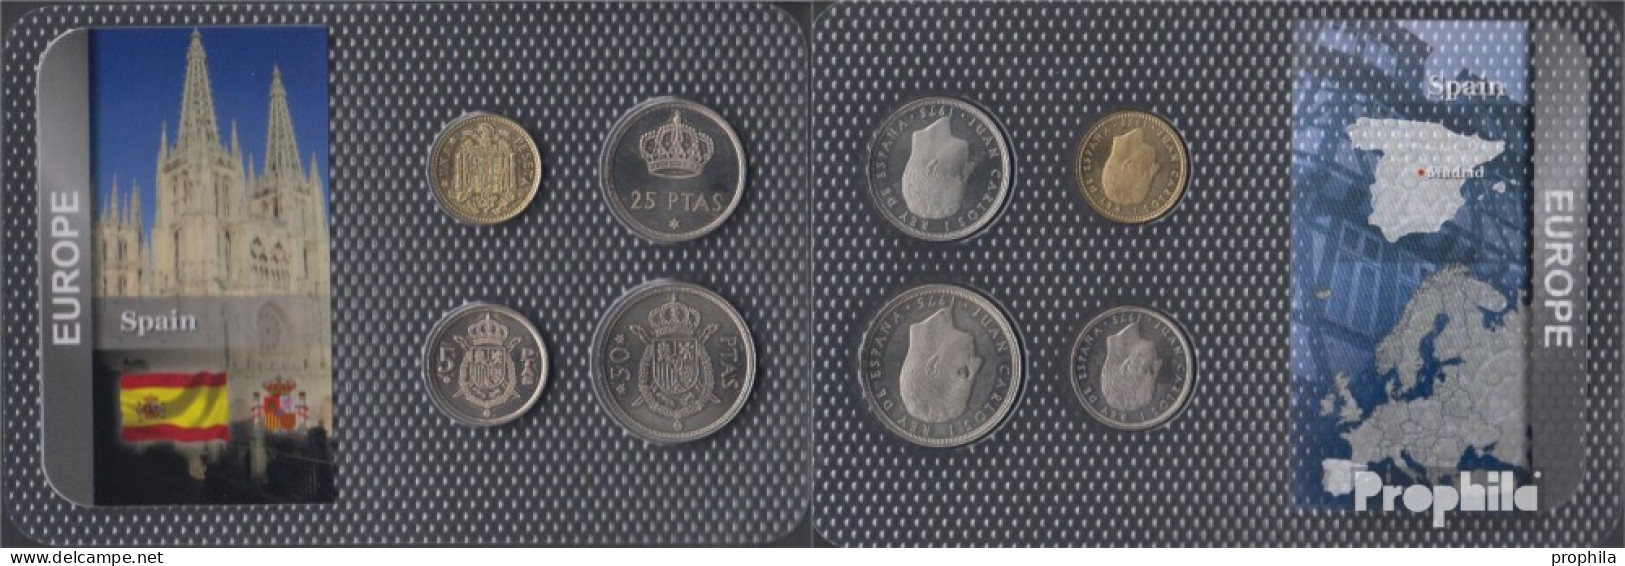 Spanien 1975 Stgl./unzirkuliert Kursmünzen Stgl./unzirkuliert 1975 1 Peseta Bis 50 Pesetas - Ongebruikte Sets & Proefsets